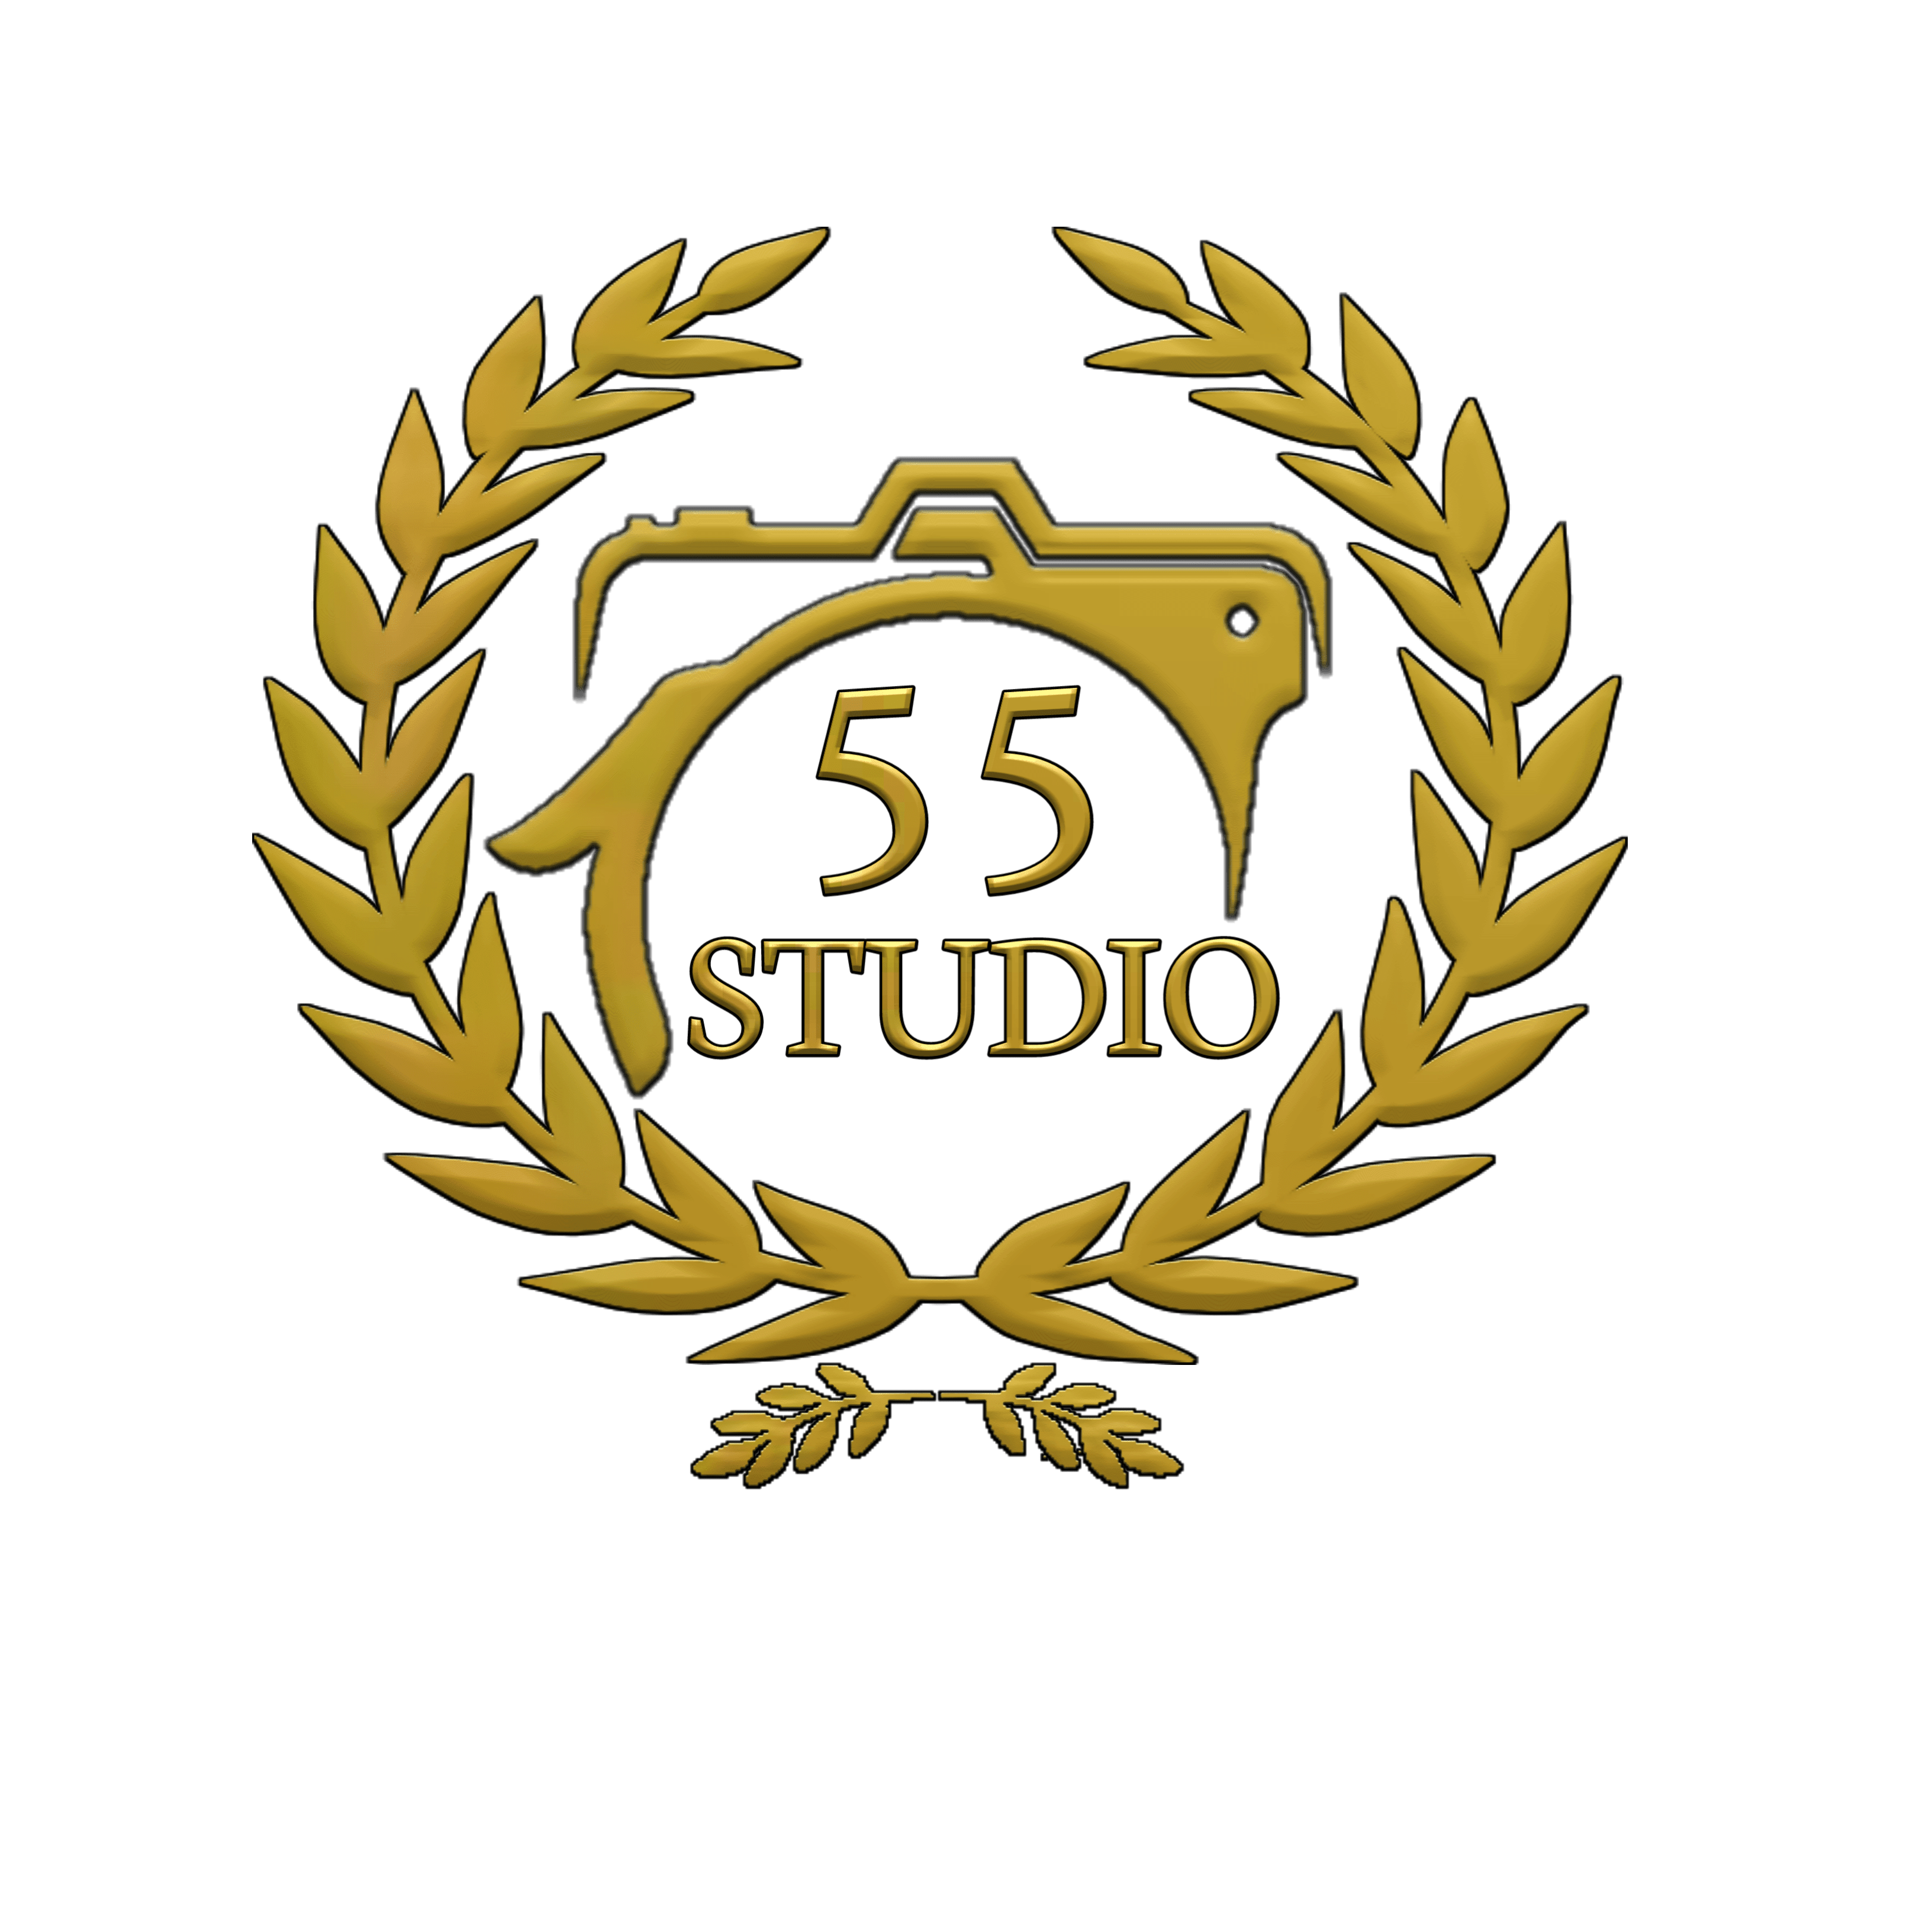 Studio55